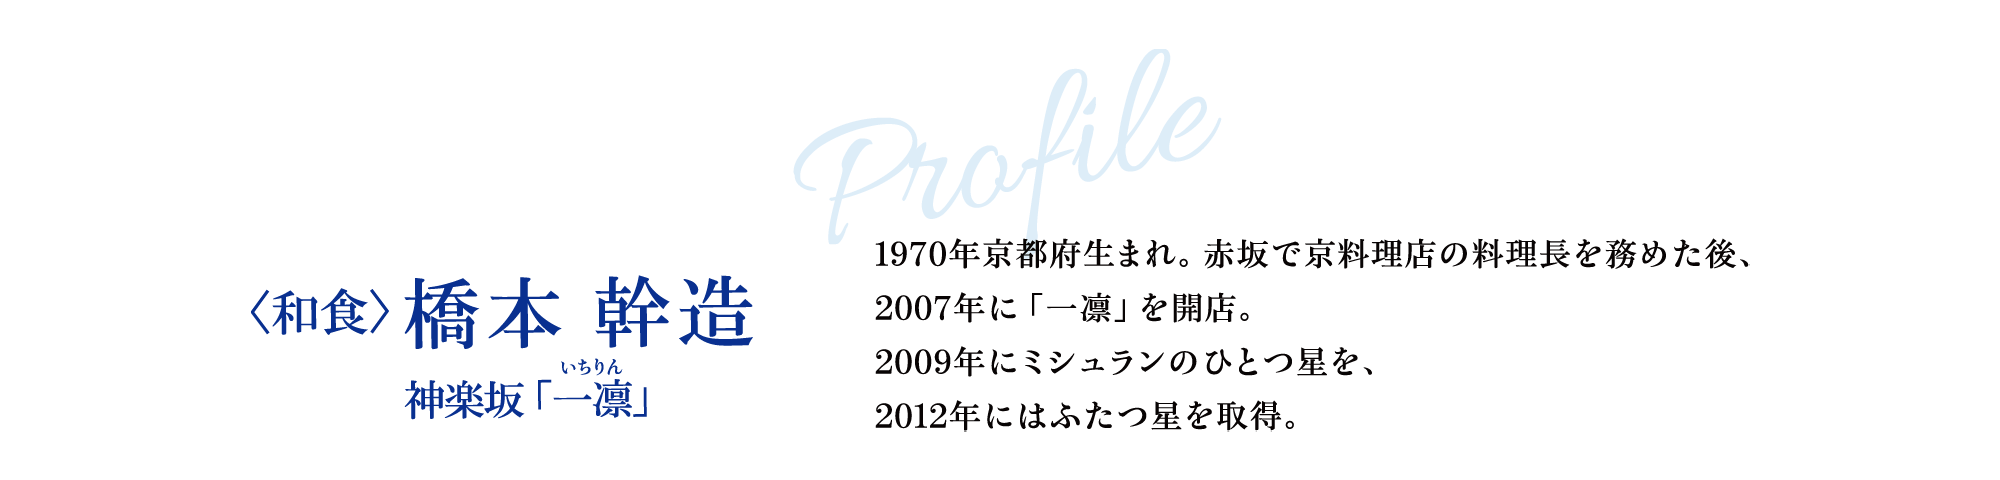 Profile 〈和食〉橋本 幹造  神楽坂「一凛」1970年京都府生まれ。赤坂で京料理店の料理長を務めた後、2007年に「一凛」を開店。2009年にミシュランのひとつ星を、2012年にはふたつ星を取得。